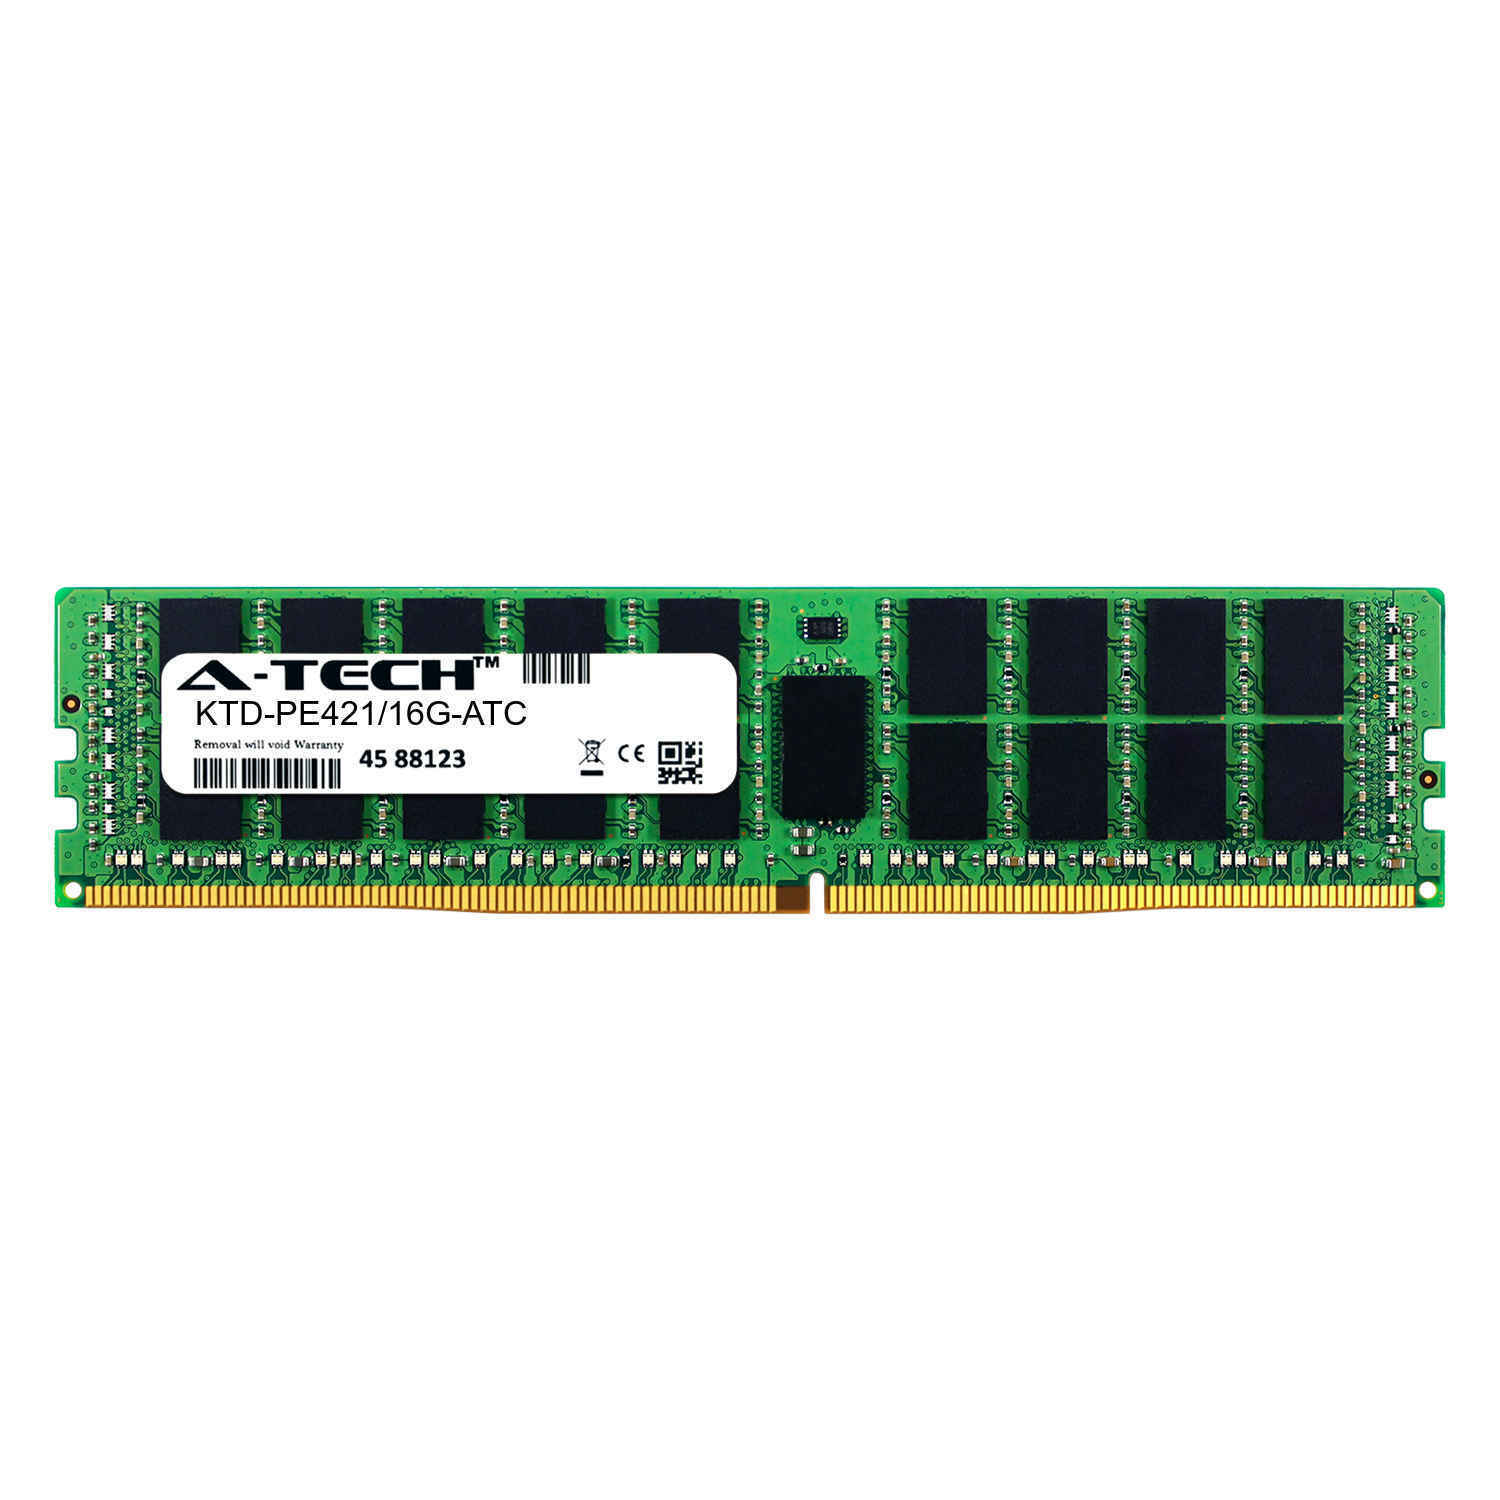 16GB DDR4 PC4-17000R RDIMM (Kingston KTD-PE421/16G Equivalent) Server Memory RAM